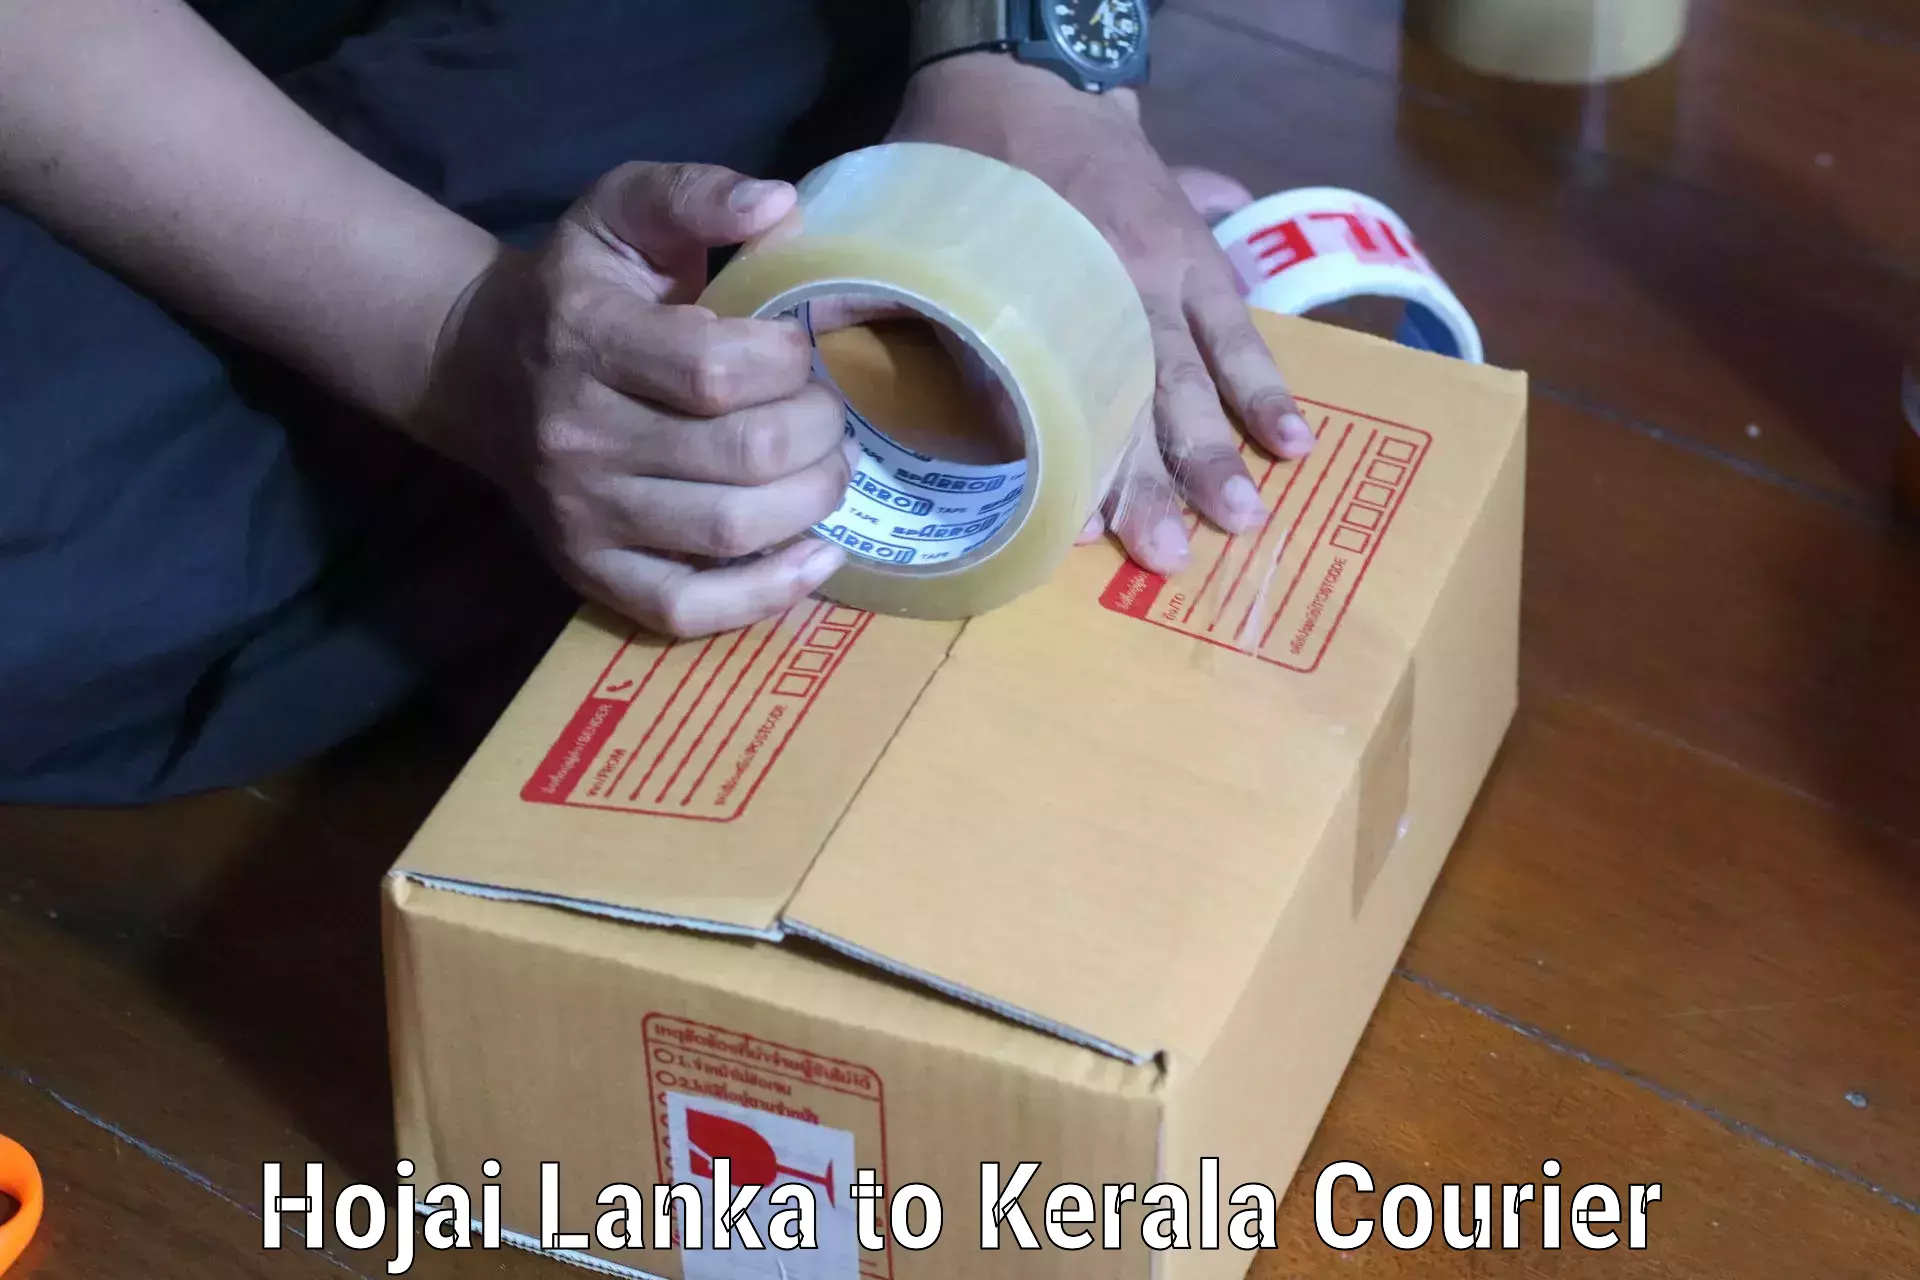 Next day courier Hojai Lanka to Kerala